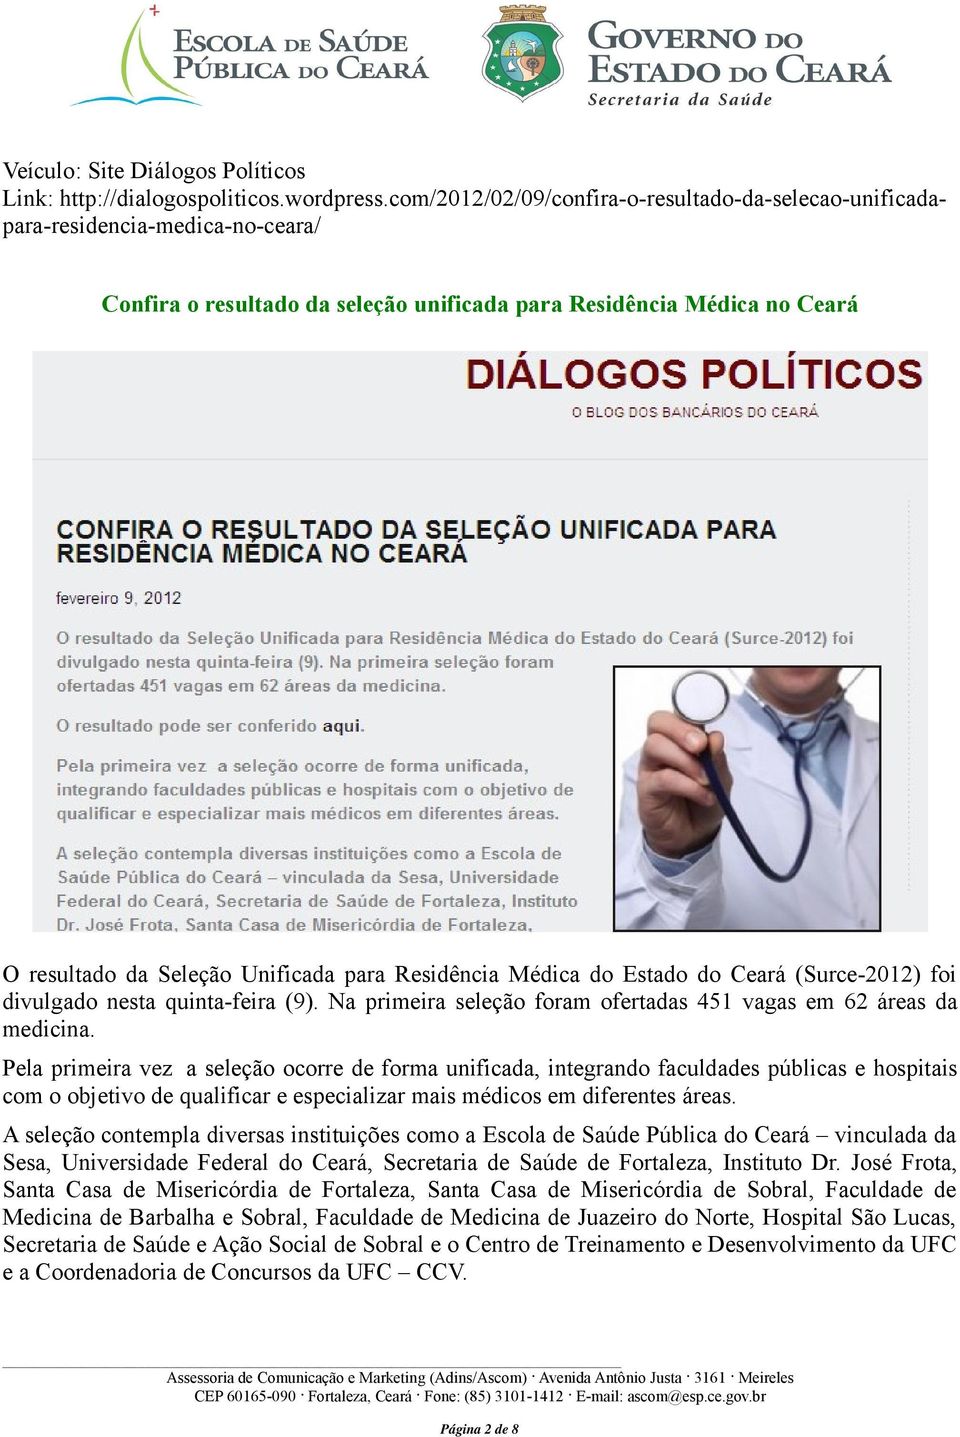 Residência Médica do Estado do Ceará (Surce-2012) foi divulgado nesta quinta-feira (9). Na primeira seleção foram ofertadas 451 vagas em 62 áreas da medicina.